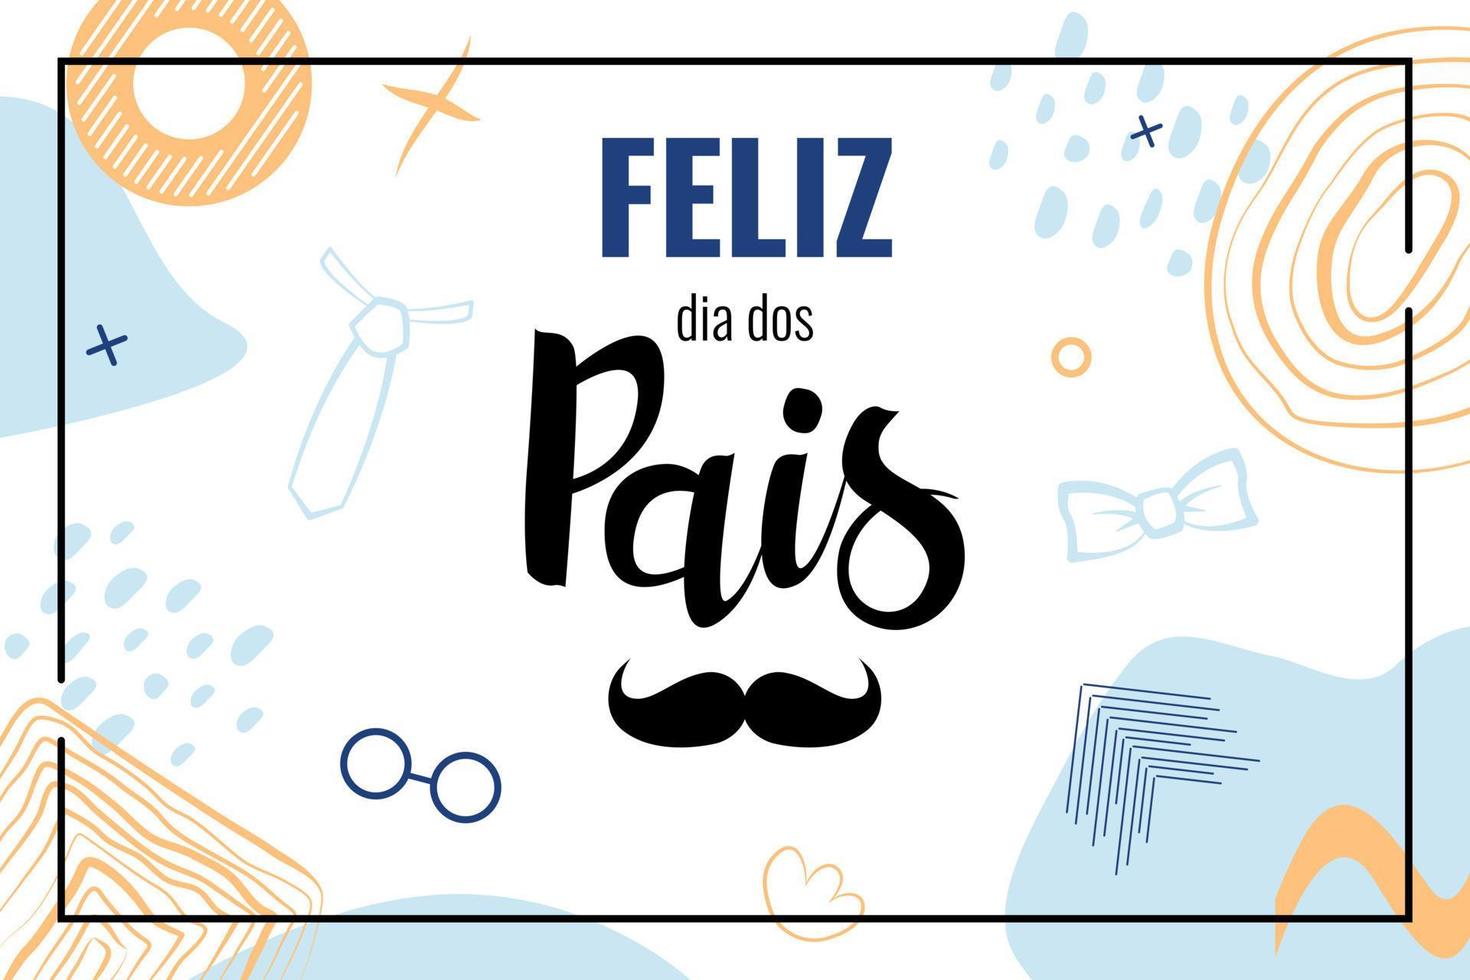 feliz dia dos pais significa feliz dia dos pais no brasil. banner com letras em língua portuguesa com bigode. vetor